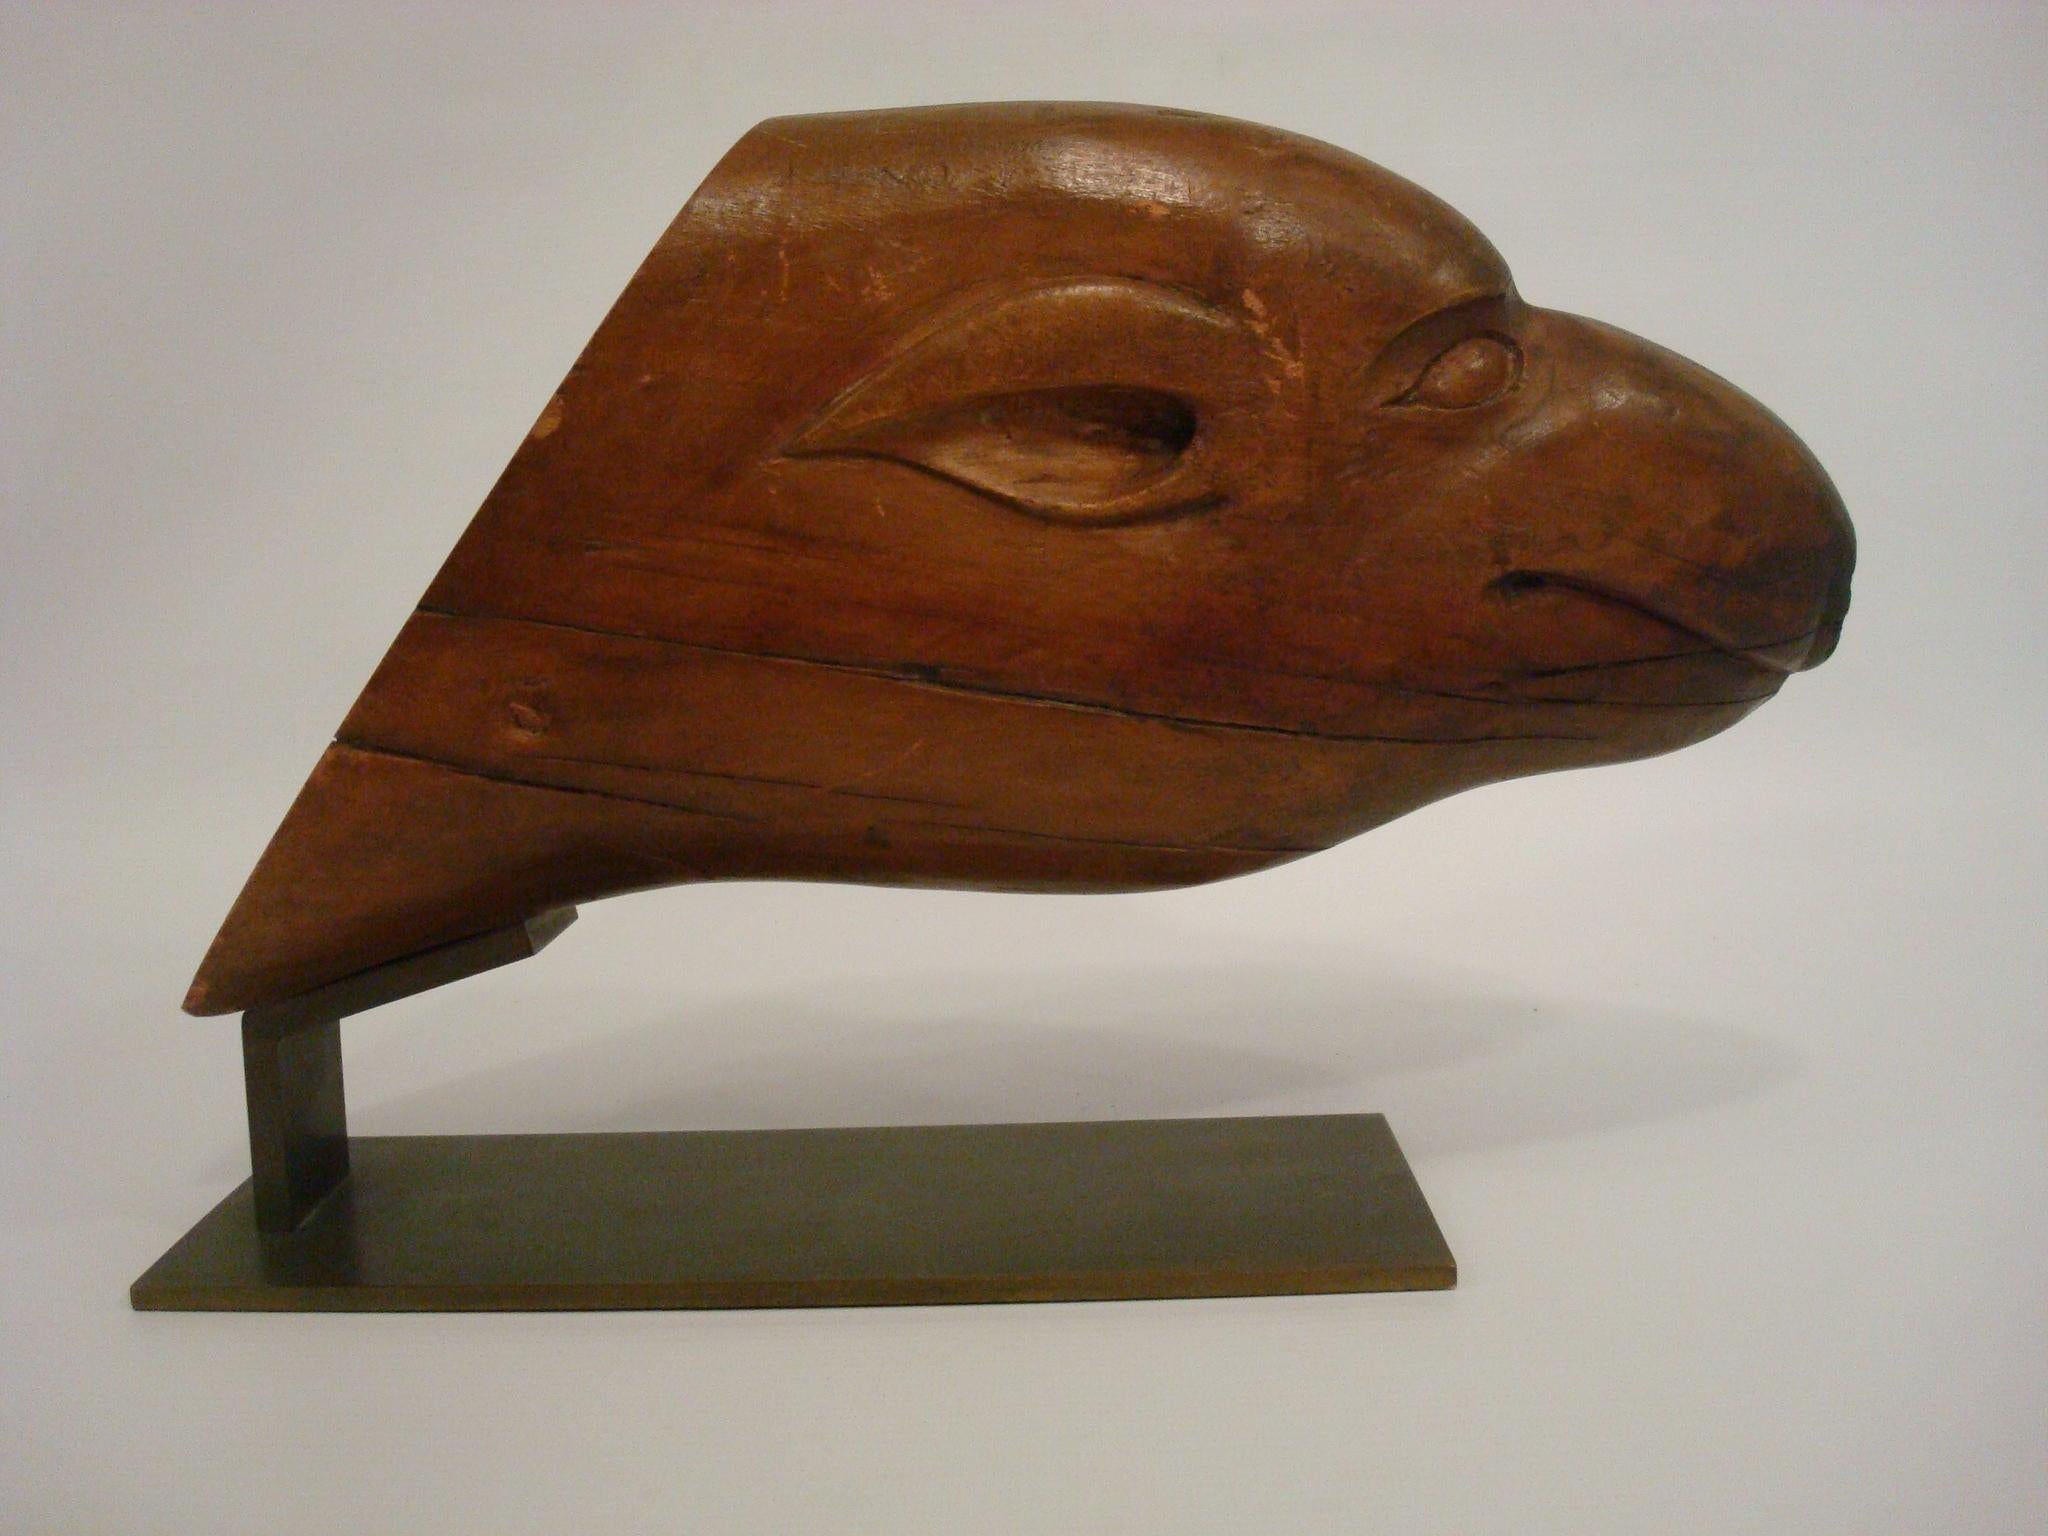 Sculpture d'art populaire représentant la tête d'un phoque. Amérique du Sud, années 30.
La tête est montée sur une base en laiton, afin de l'exposer.
La tête a plusieurs fissures comme vous pouvez le voir sur les photos. Très belle patine